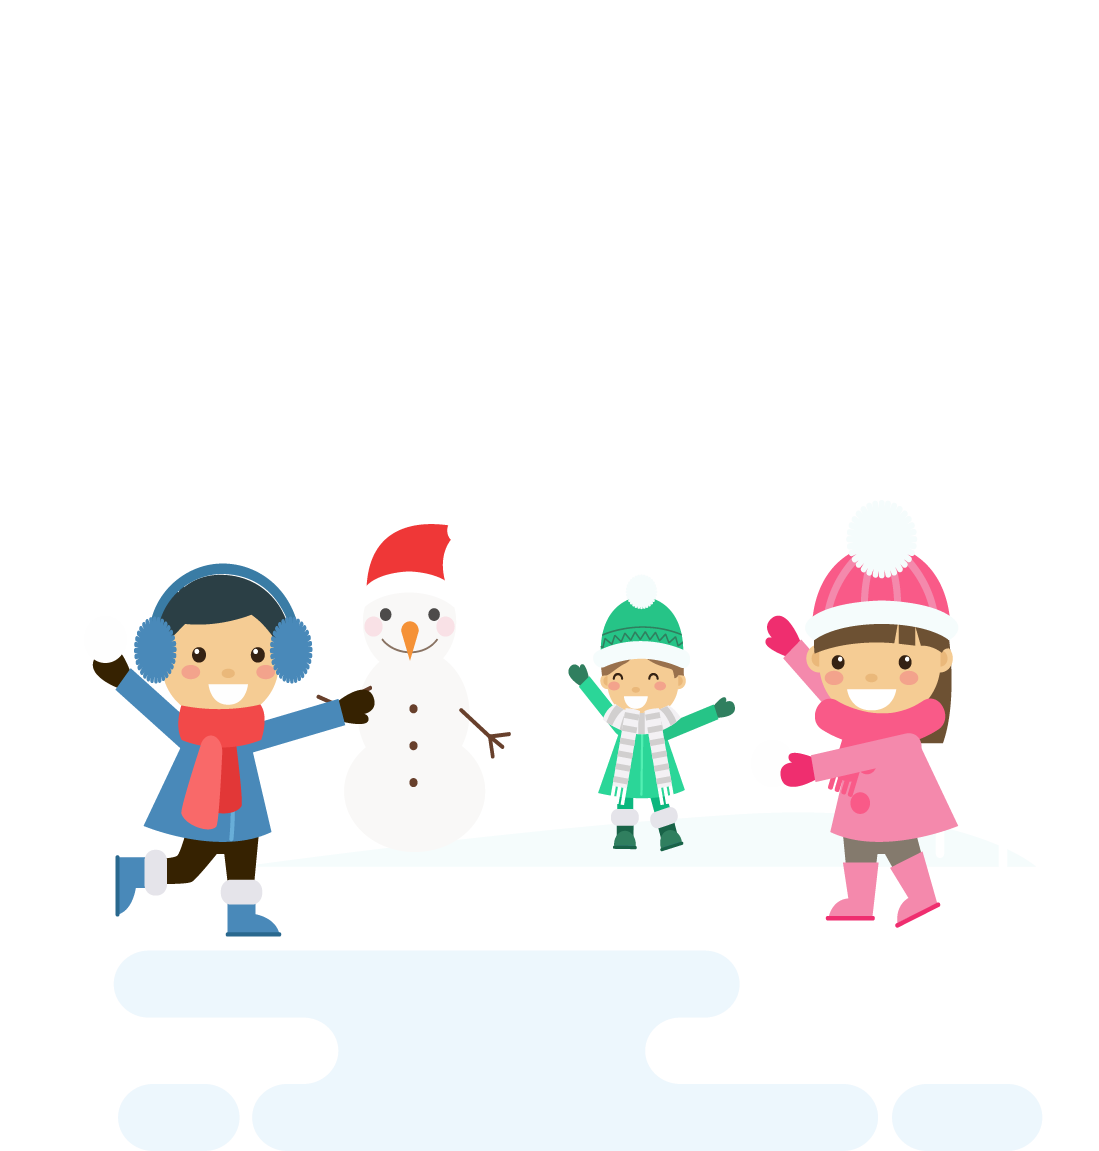 Дети играют в снежки